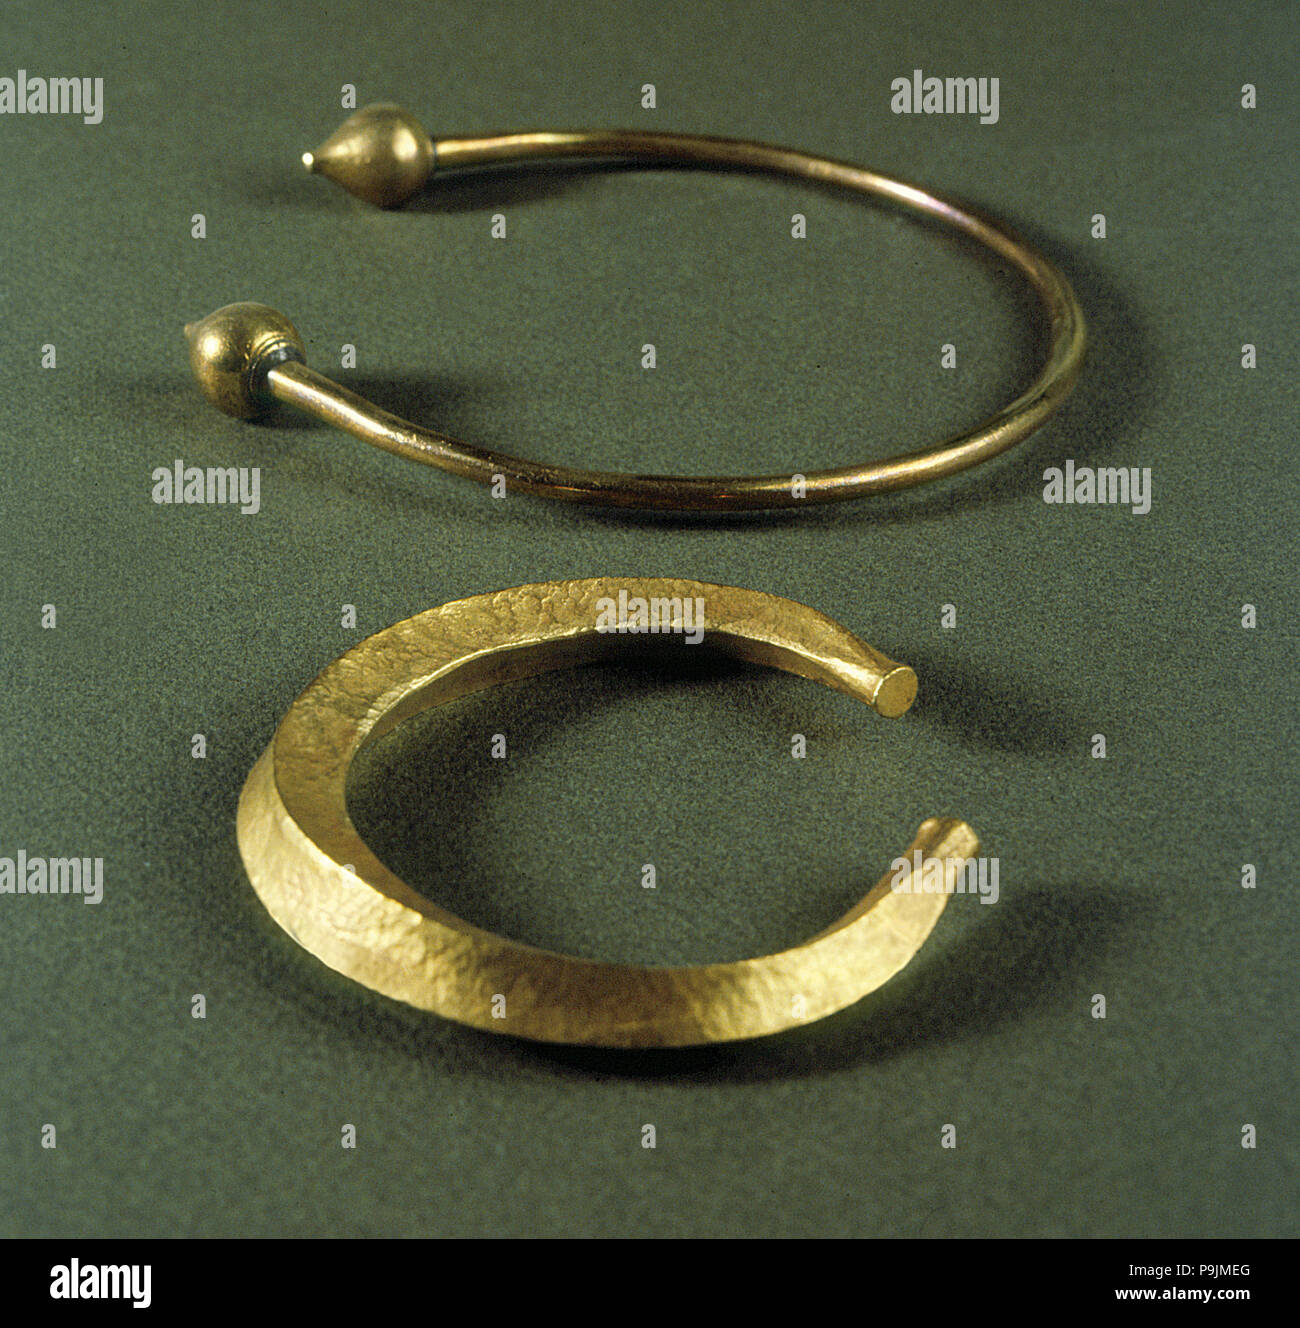 Keltischer Schmuck, Gold Armband und Halskette Stockfotografie - Alamy